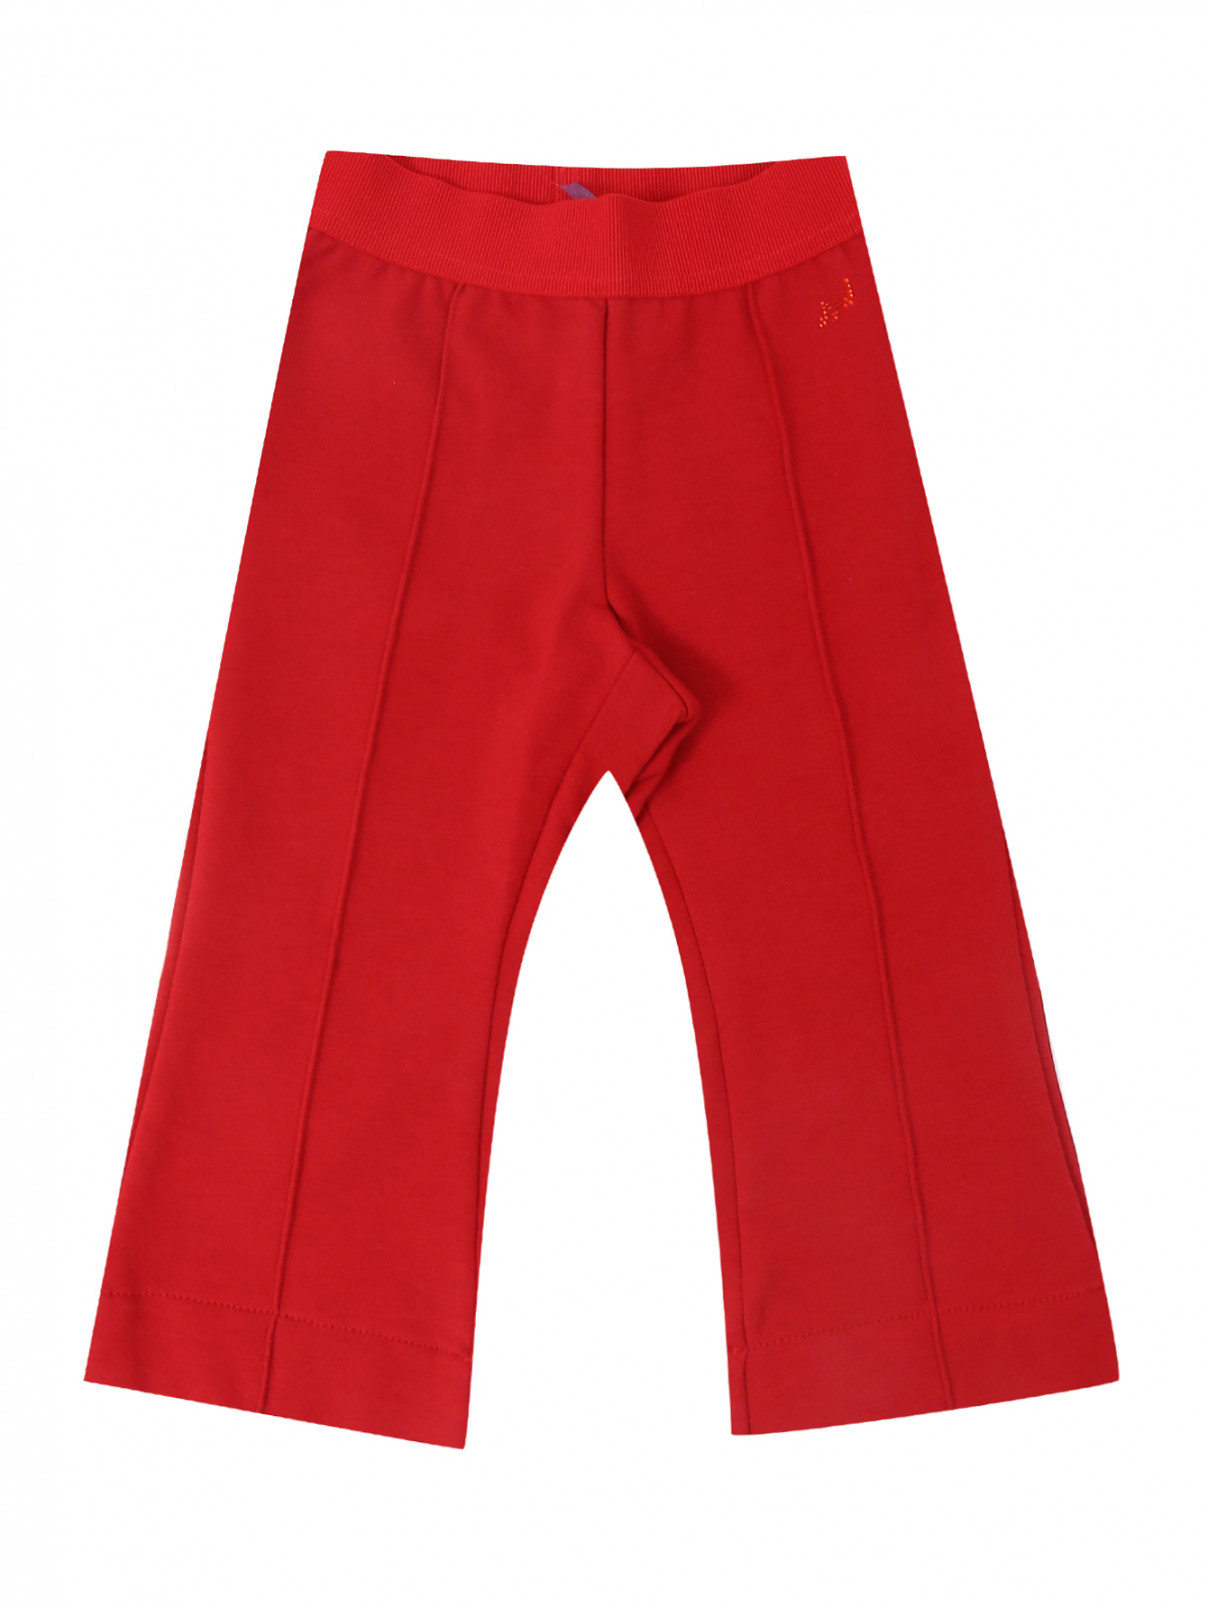 Трикотажные брюки на резинке MiMiSol  –  Общий вид  – Цвет:  Красный